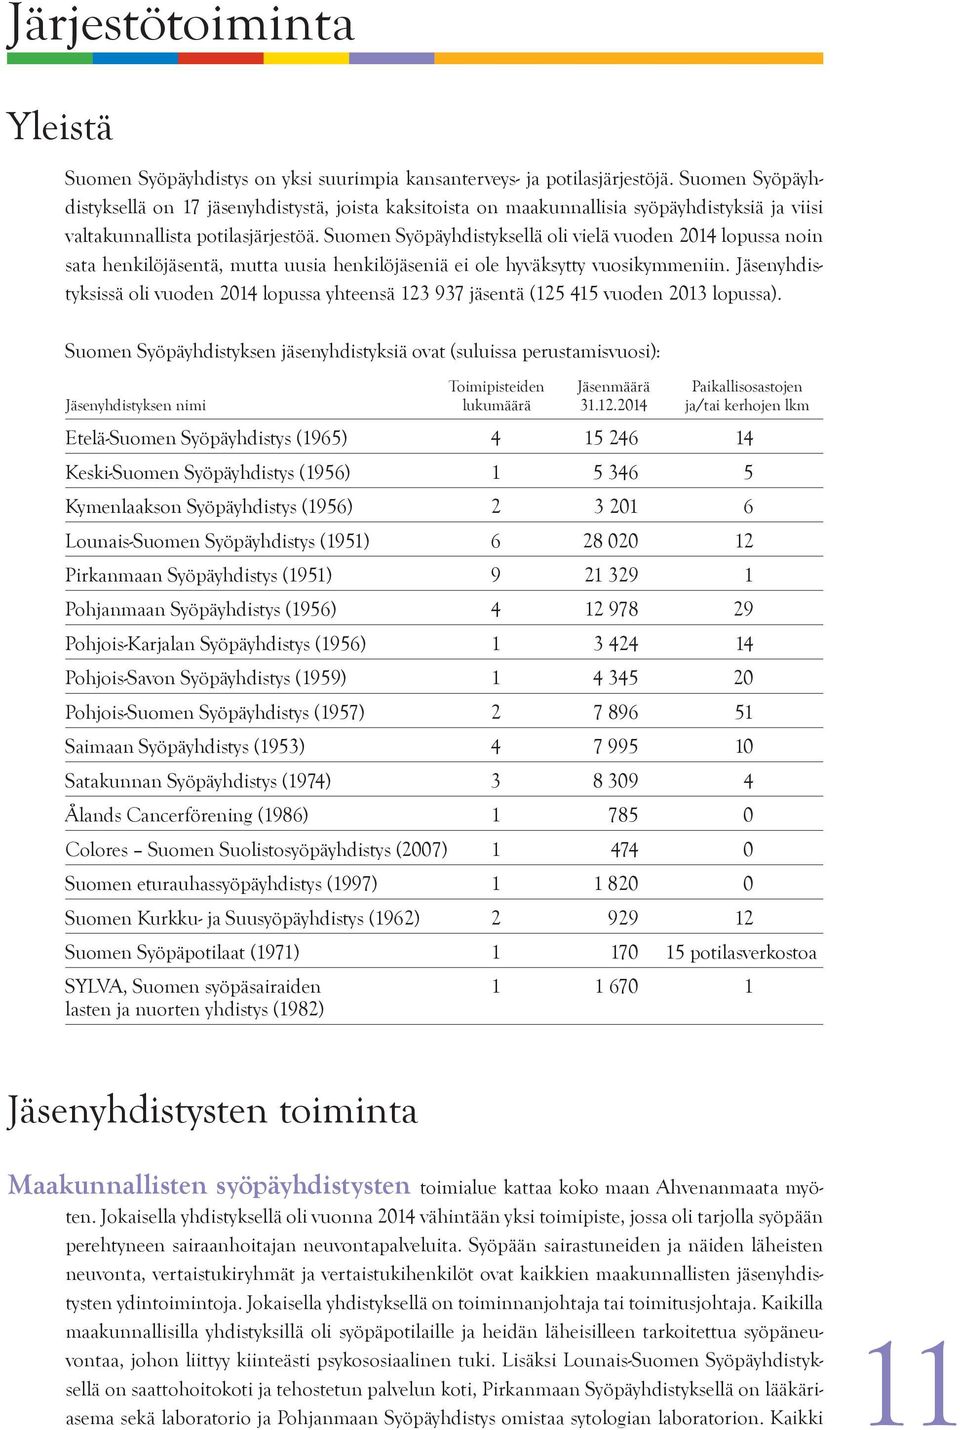 Suomen Syöpäyhdistyksellä oli vielä vuoden 2014 lopussa noin sata henkilöjäsentä, mutta uusia henkilöjäseniä ei ole hyväksytty vuosikymmeniin.